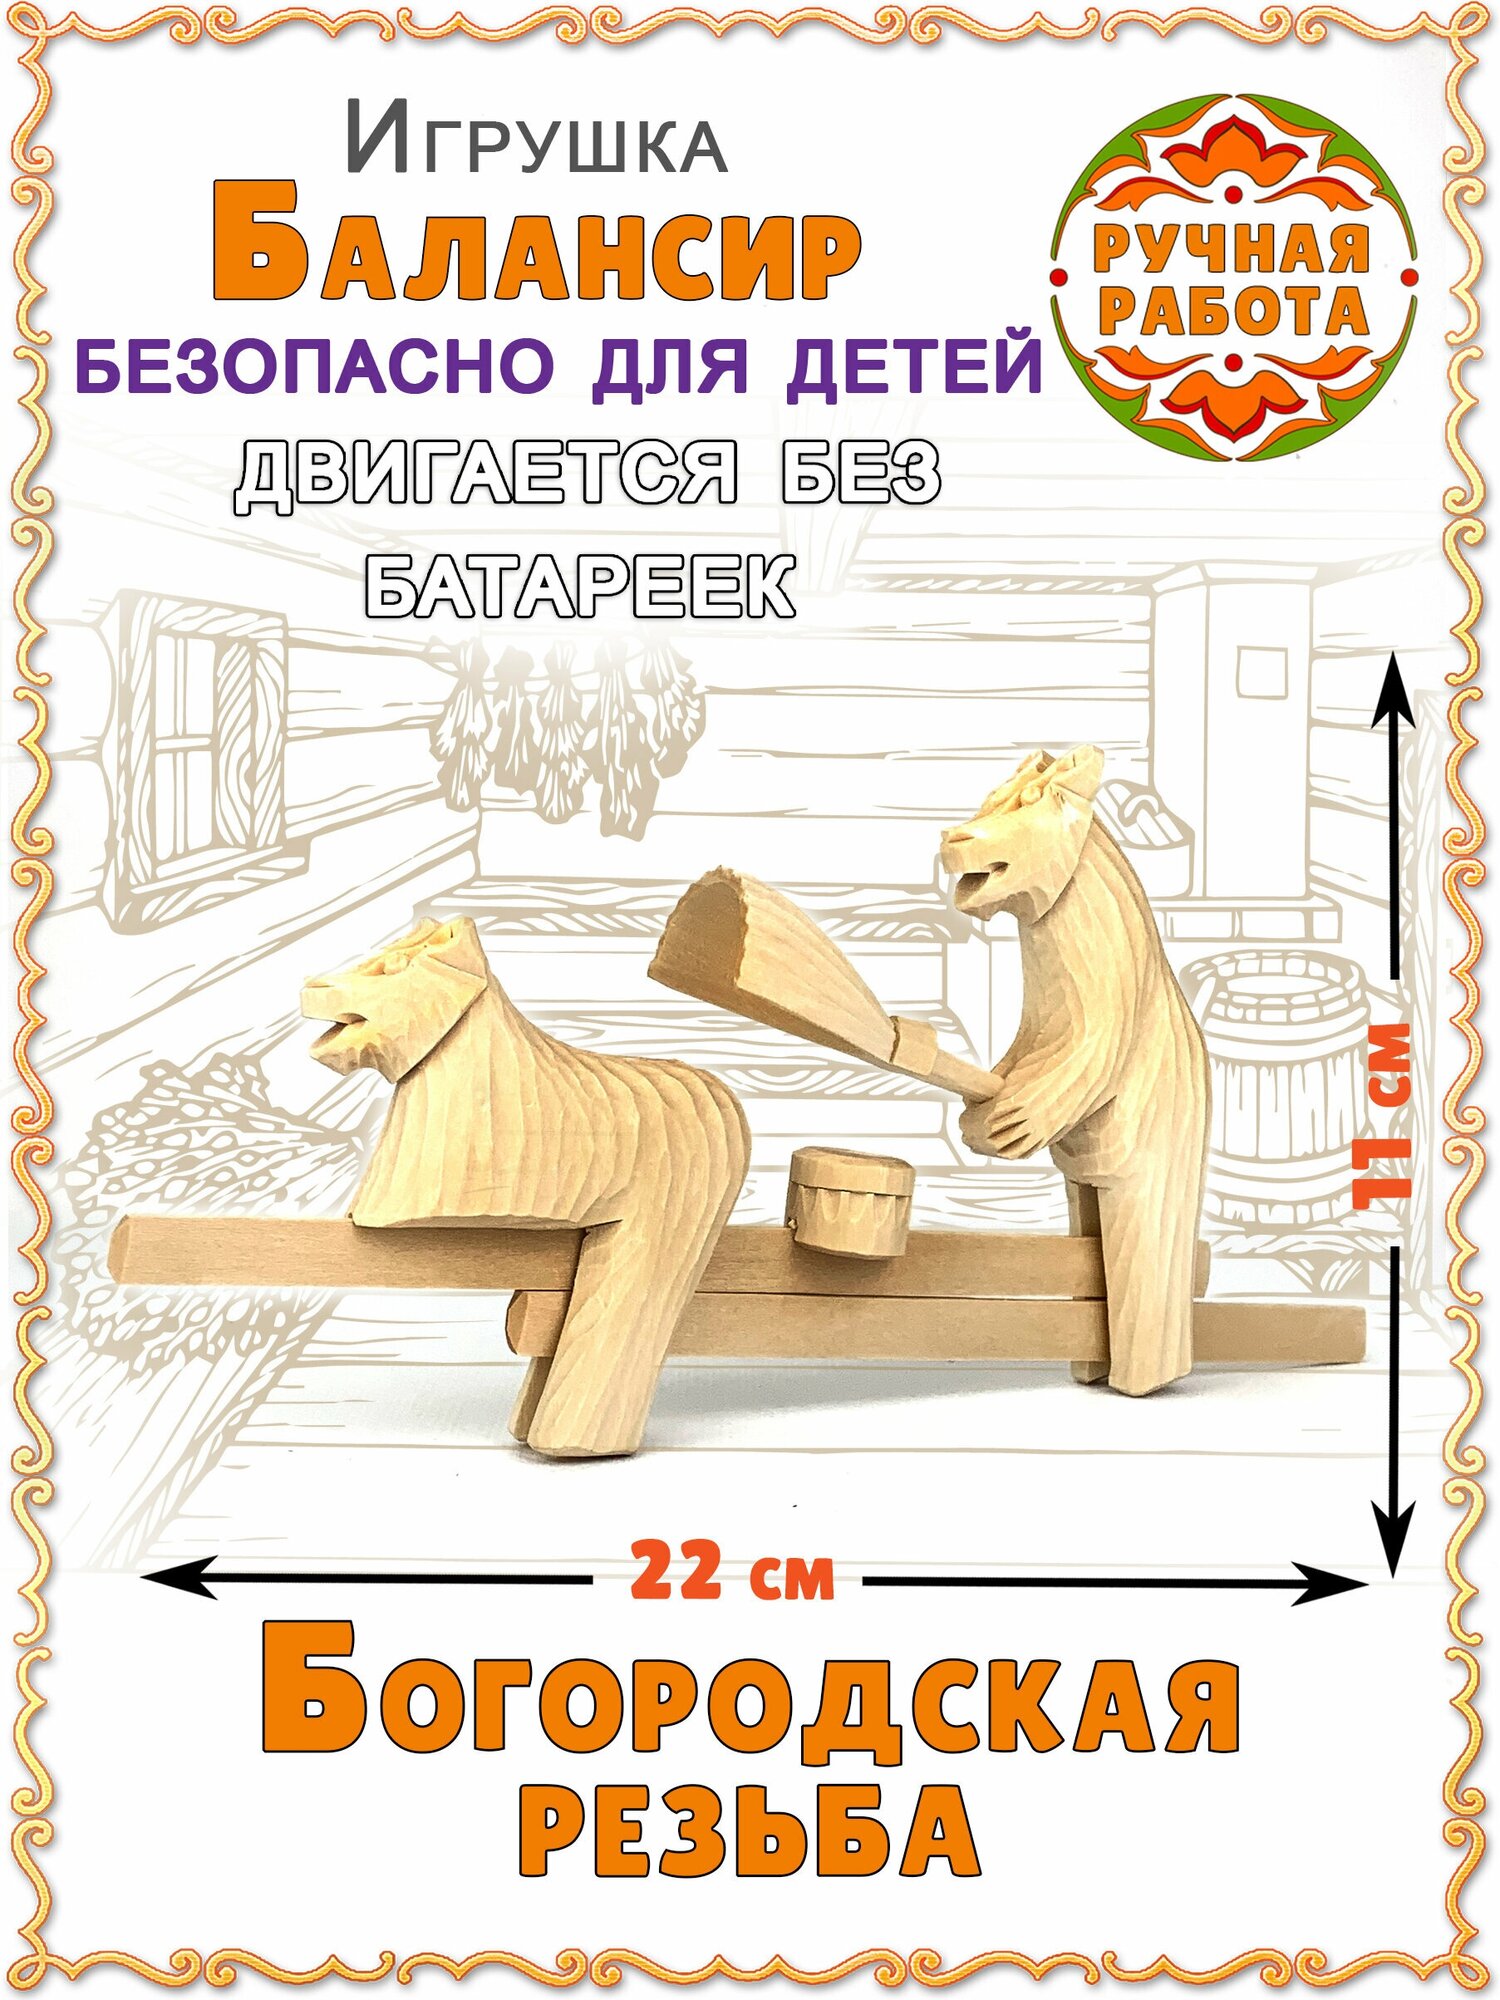 Традиционная народная русская деревянная детская богородская игрушка в подарок. Динамическая интерактивная игрушка из натурального материала.